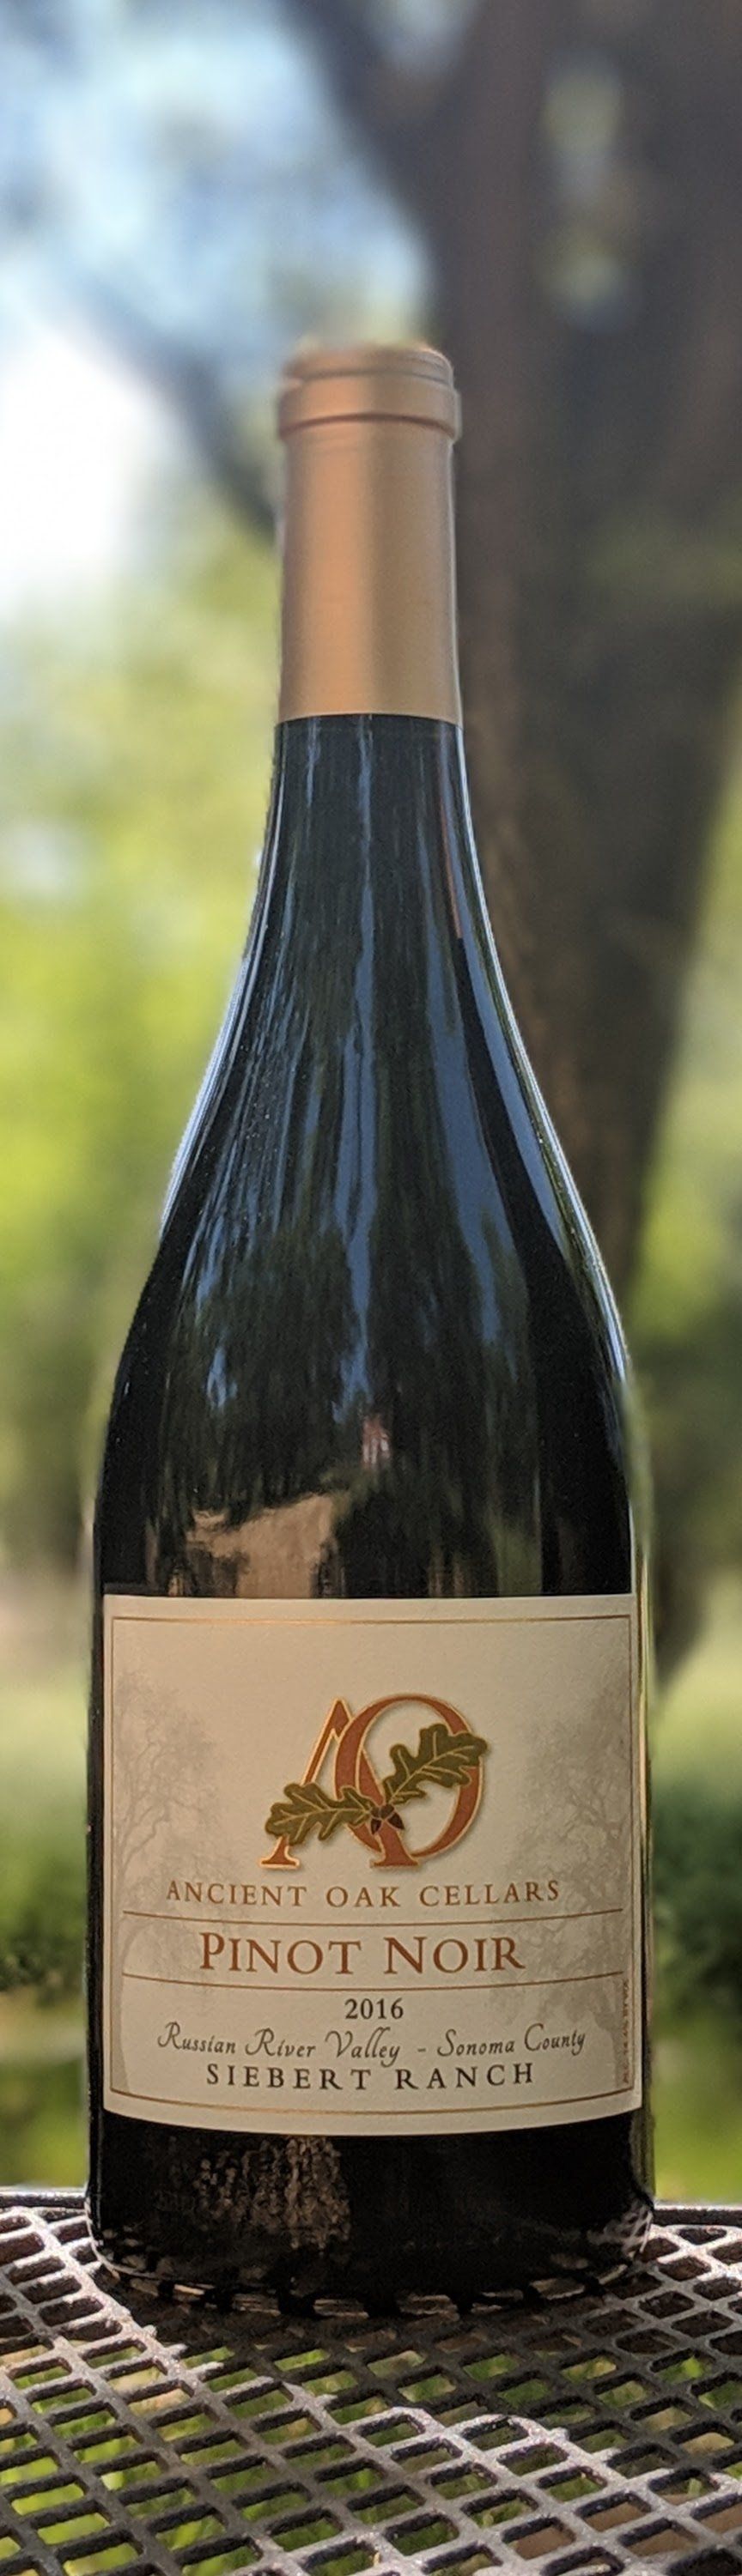 bottle of Ancient Oak Cellars' Siebert Ranch Pinot Noir, made by winemaker Greg La Follette